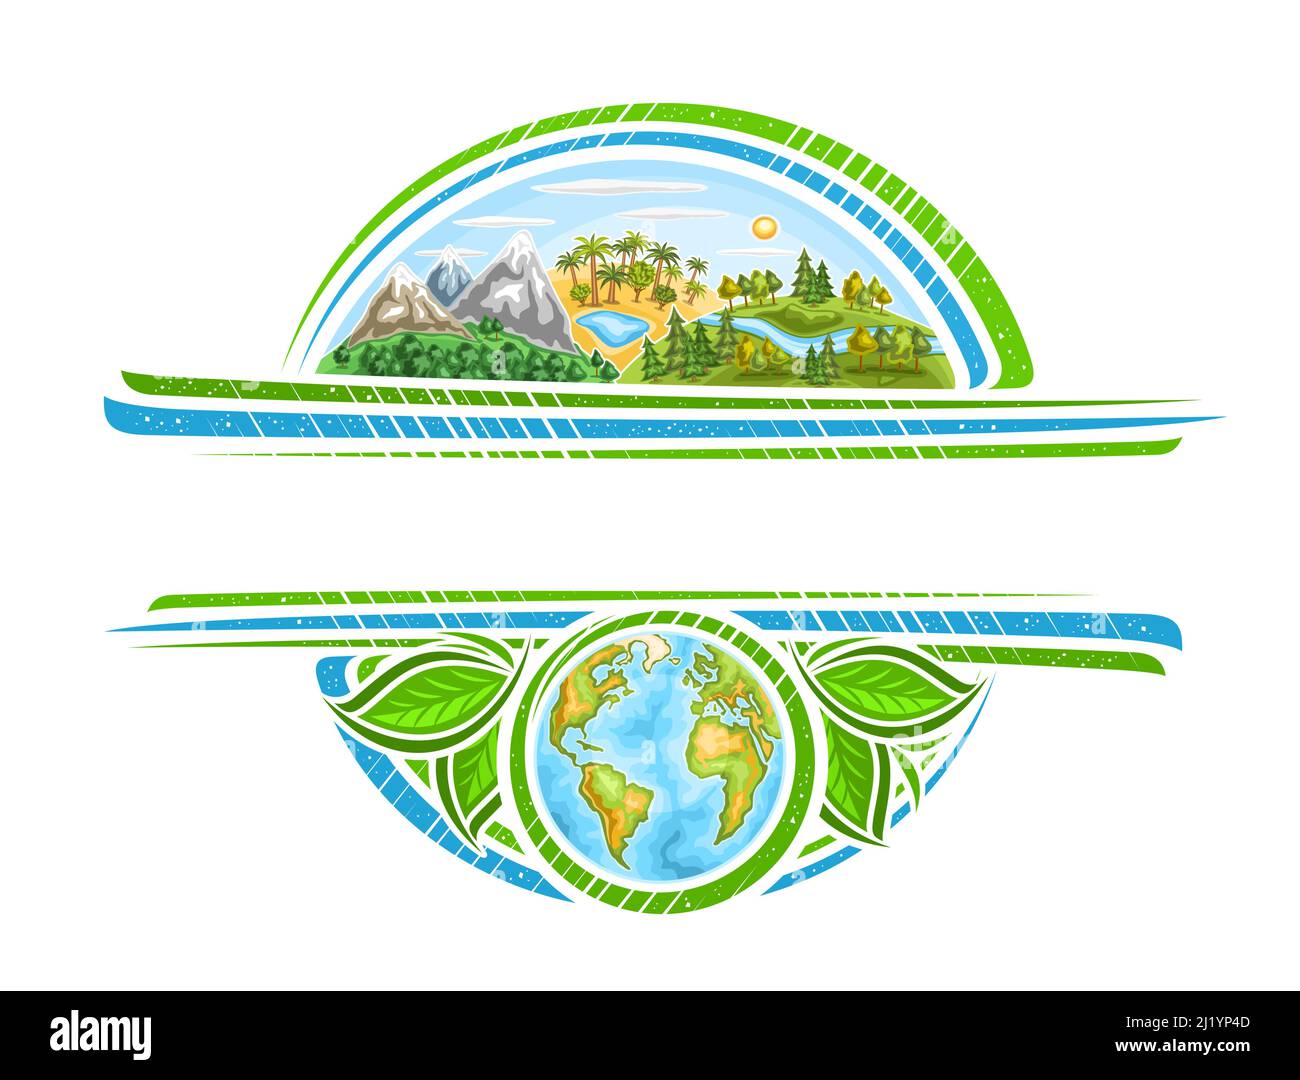 Vektorrahmen für den Earth Day Holiday mit Kopierraum für Grußtext, dekorativem Rahmen mit Darstellung der Bergregion, afrika-Palmen, Holz Stock Vektor